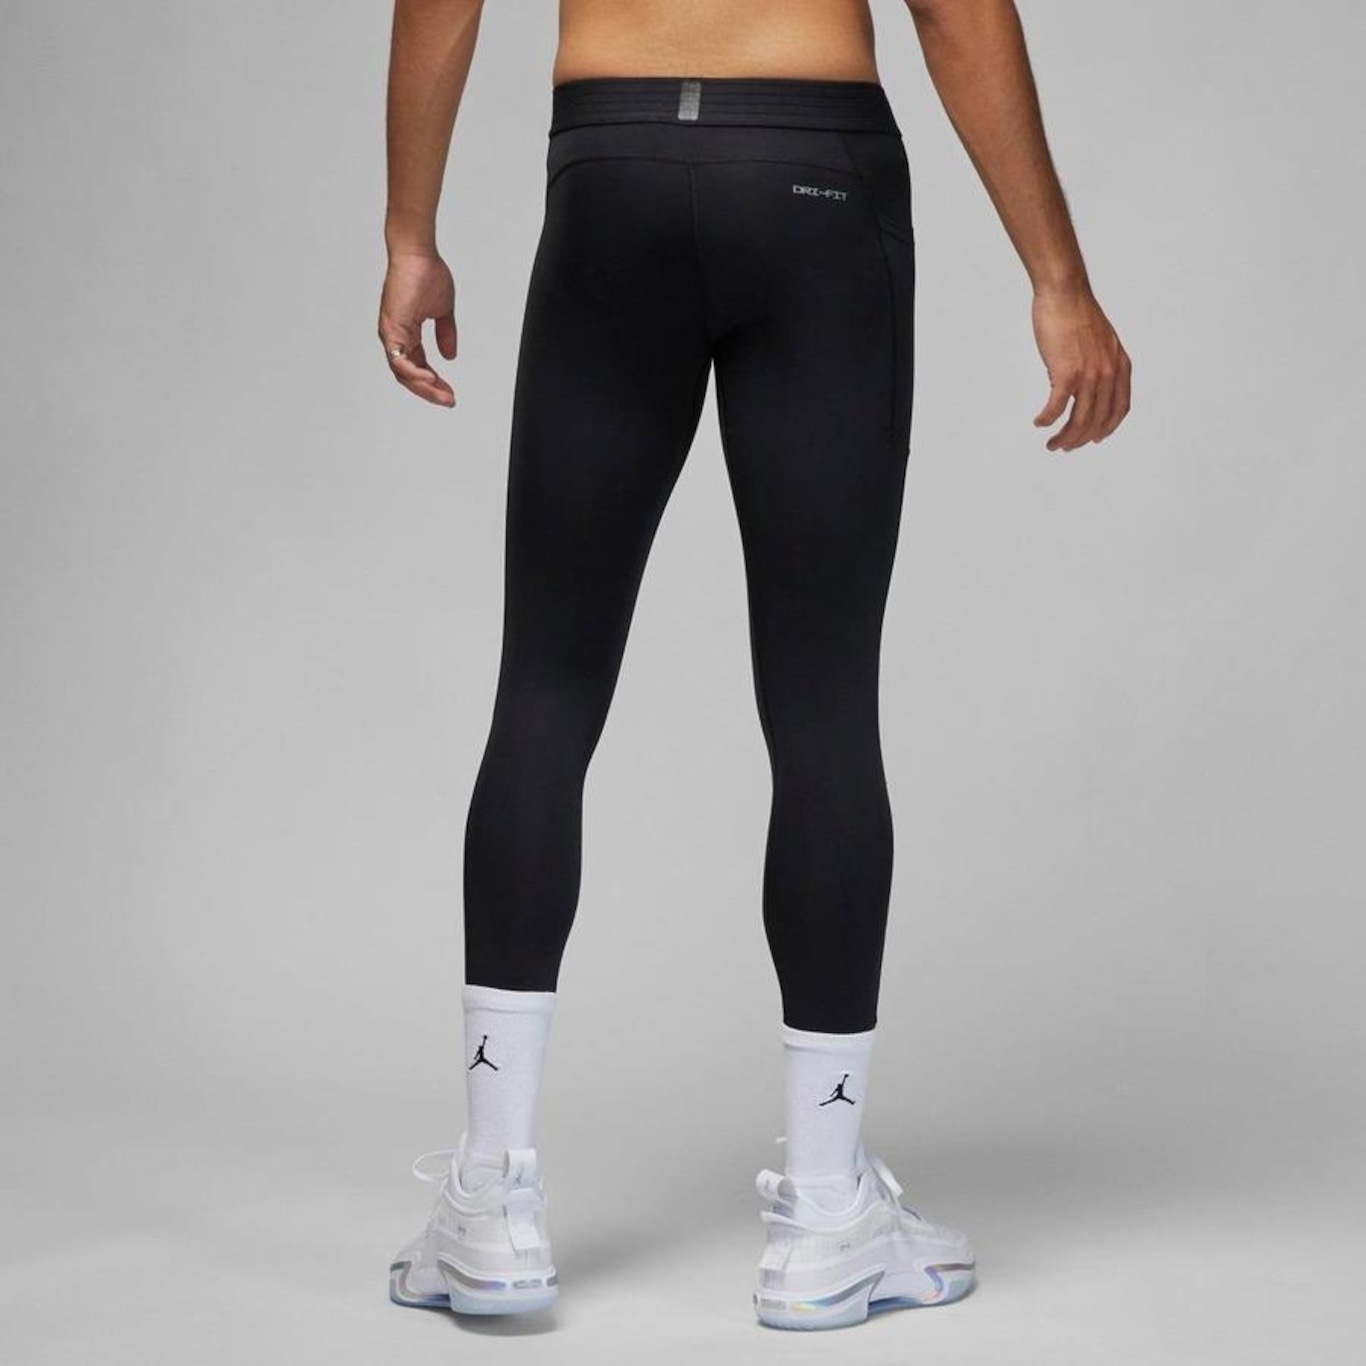 Legging Nike Sportswear Club Logo 2 Cinza - Compre Agora